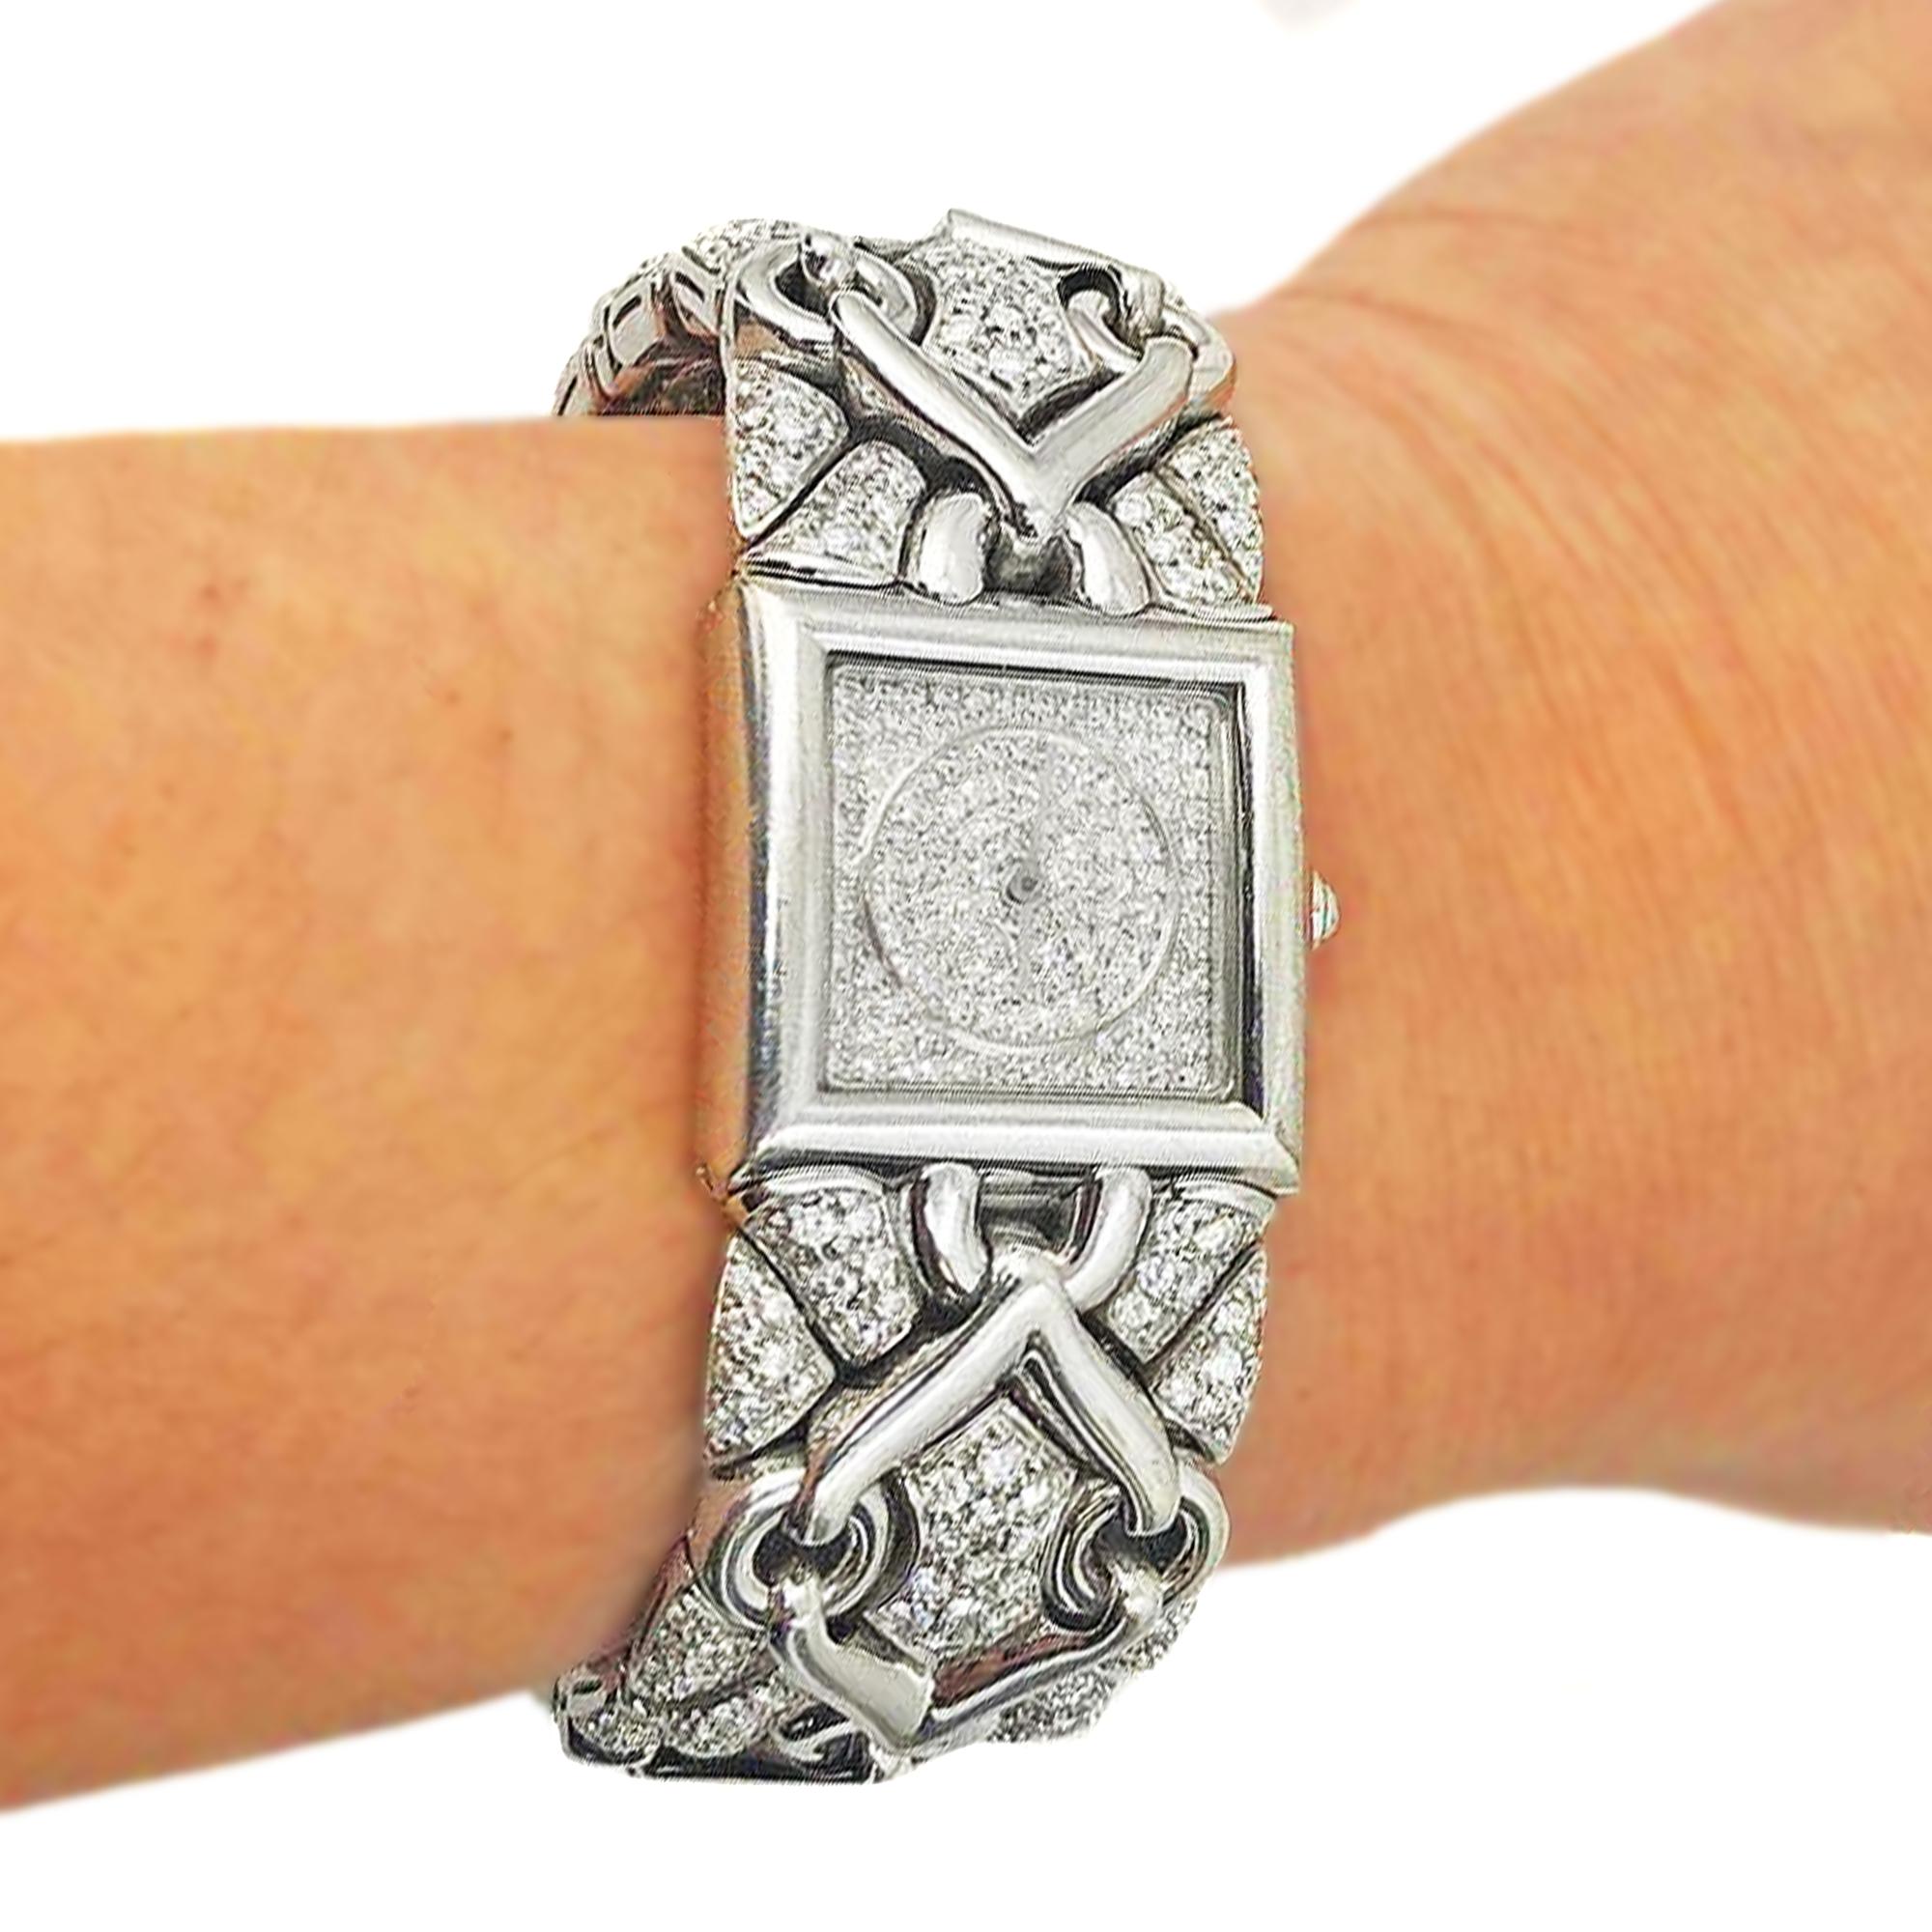 BVLGARI Trika 21mm 18K Weißgold und alle Diamanten Uhr

Diese unglaubliche Bulgari Damenarmbanduhr ist aus 18 Karat Weißgold gefertigt. Das Uhrenarmband ist mit einem einzigartigen, komplizierten Muster versehen und mit runden Diamanten im